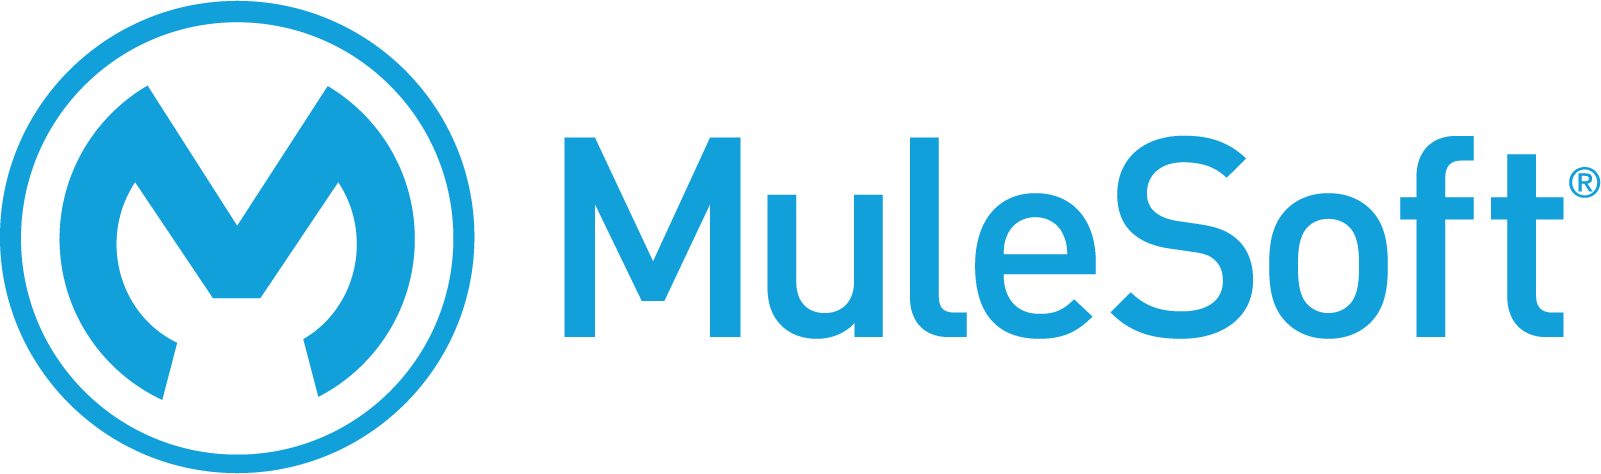 mulesoft-inc-logo.png